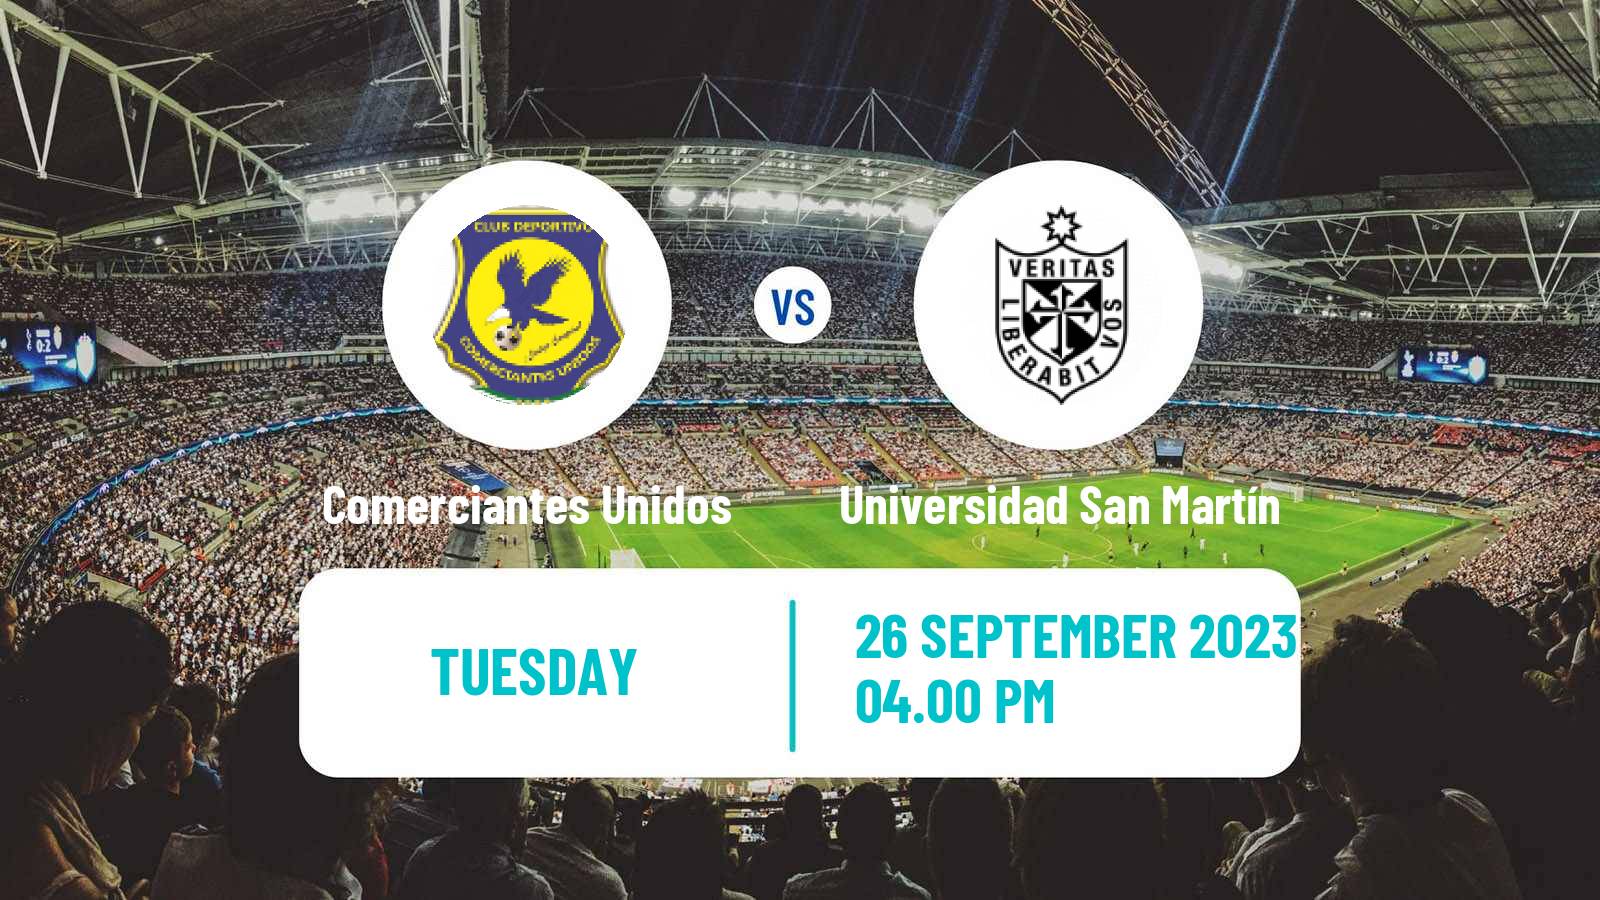 Soccer Peruvian Liga 2 Comerciantes Unidos - Universidad San Martín